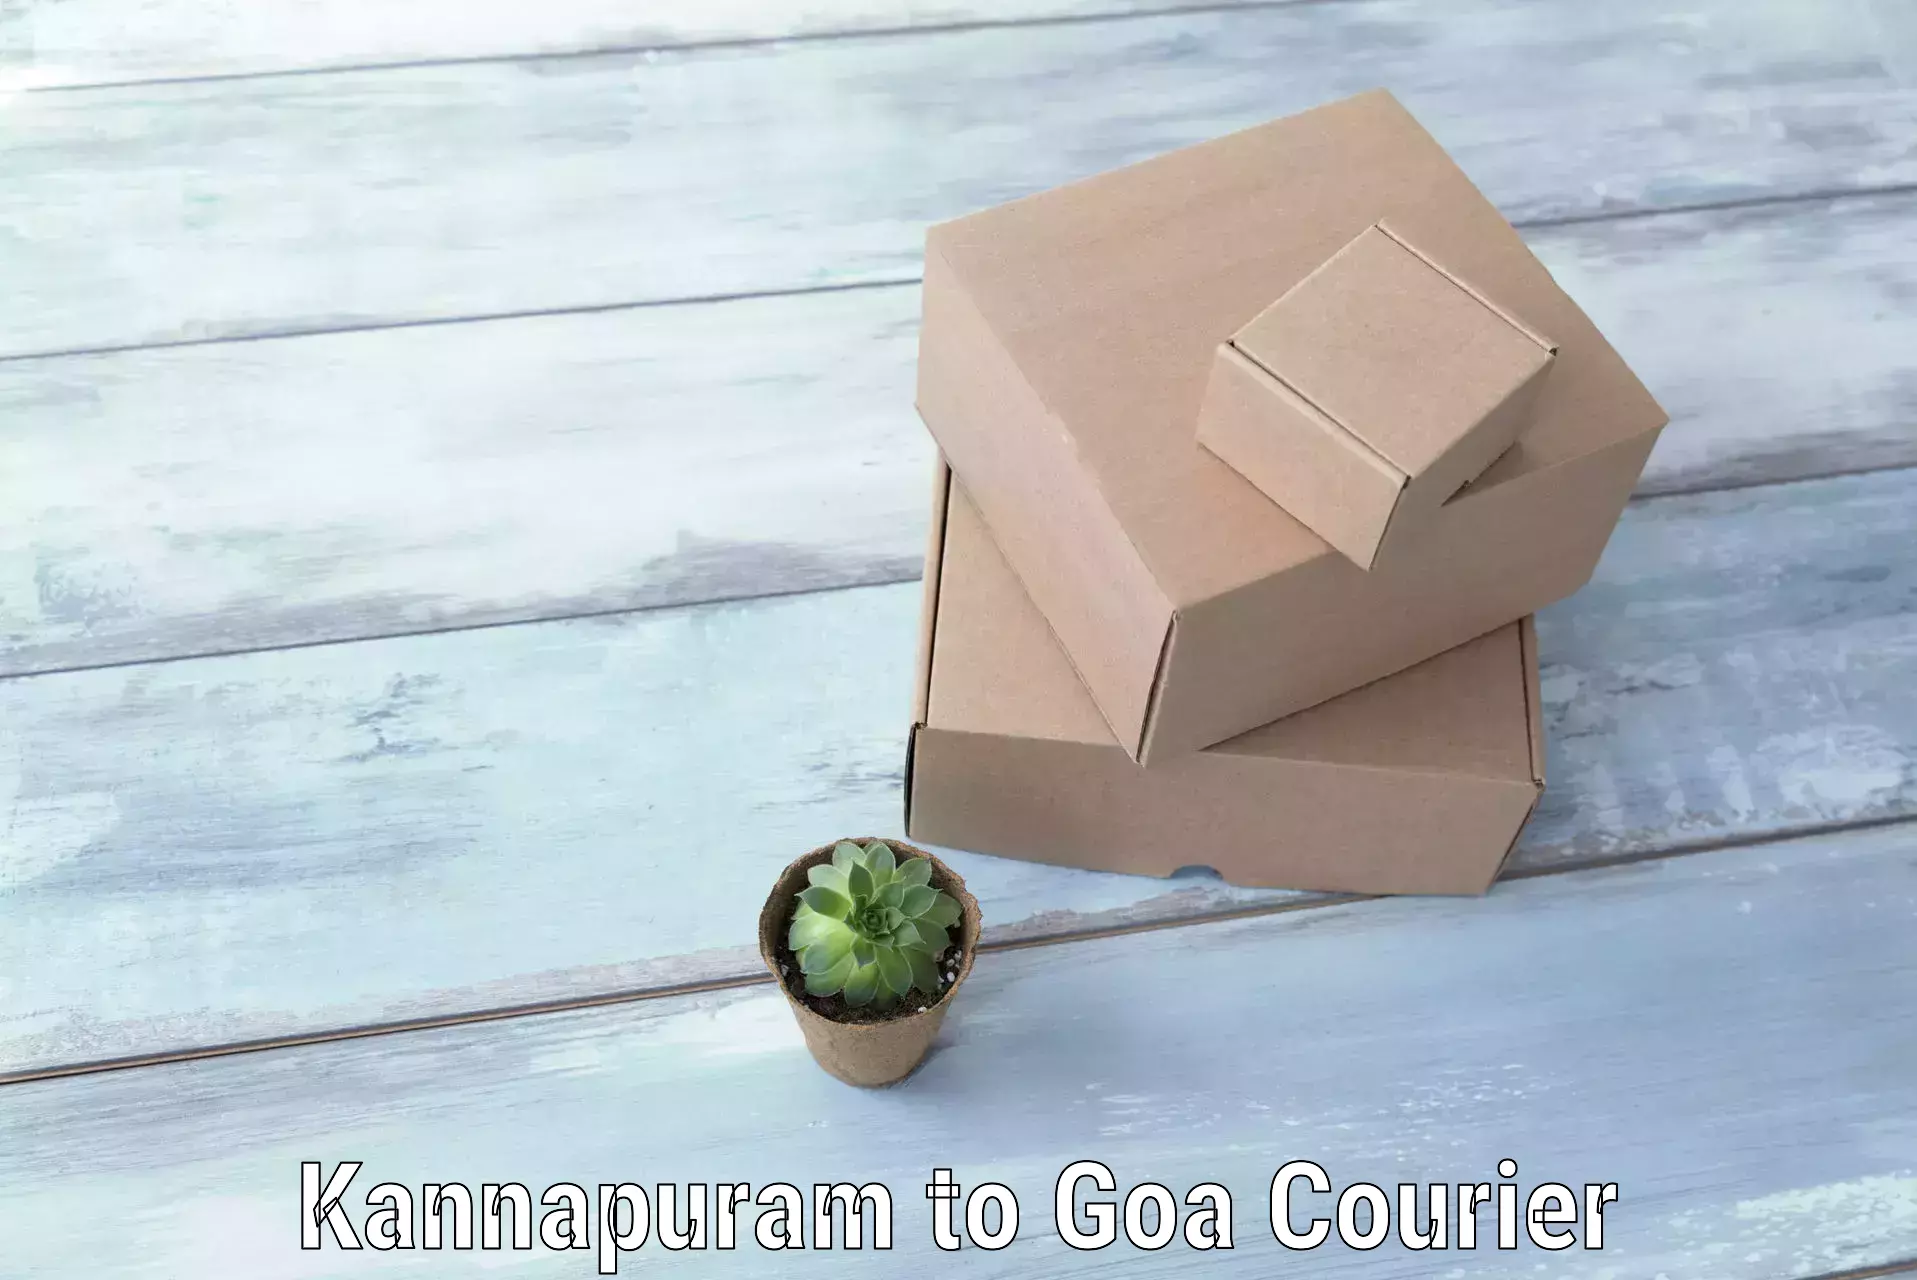 Baggage courier calculator Kannapuram to South Goa